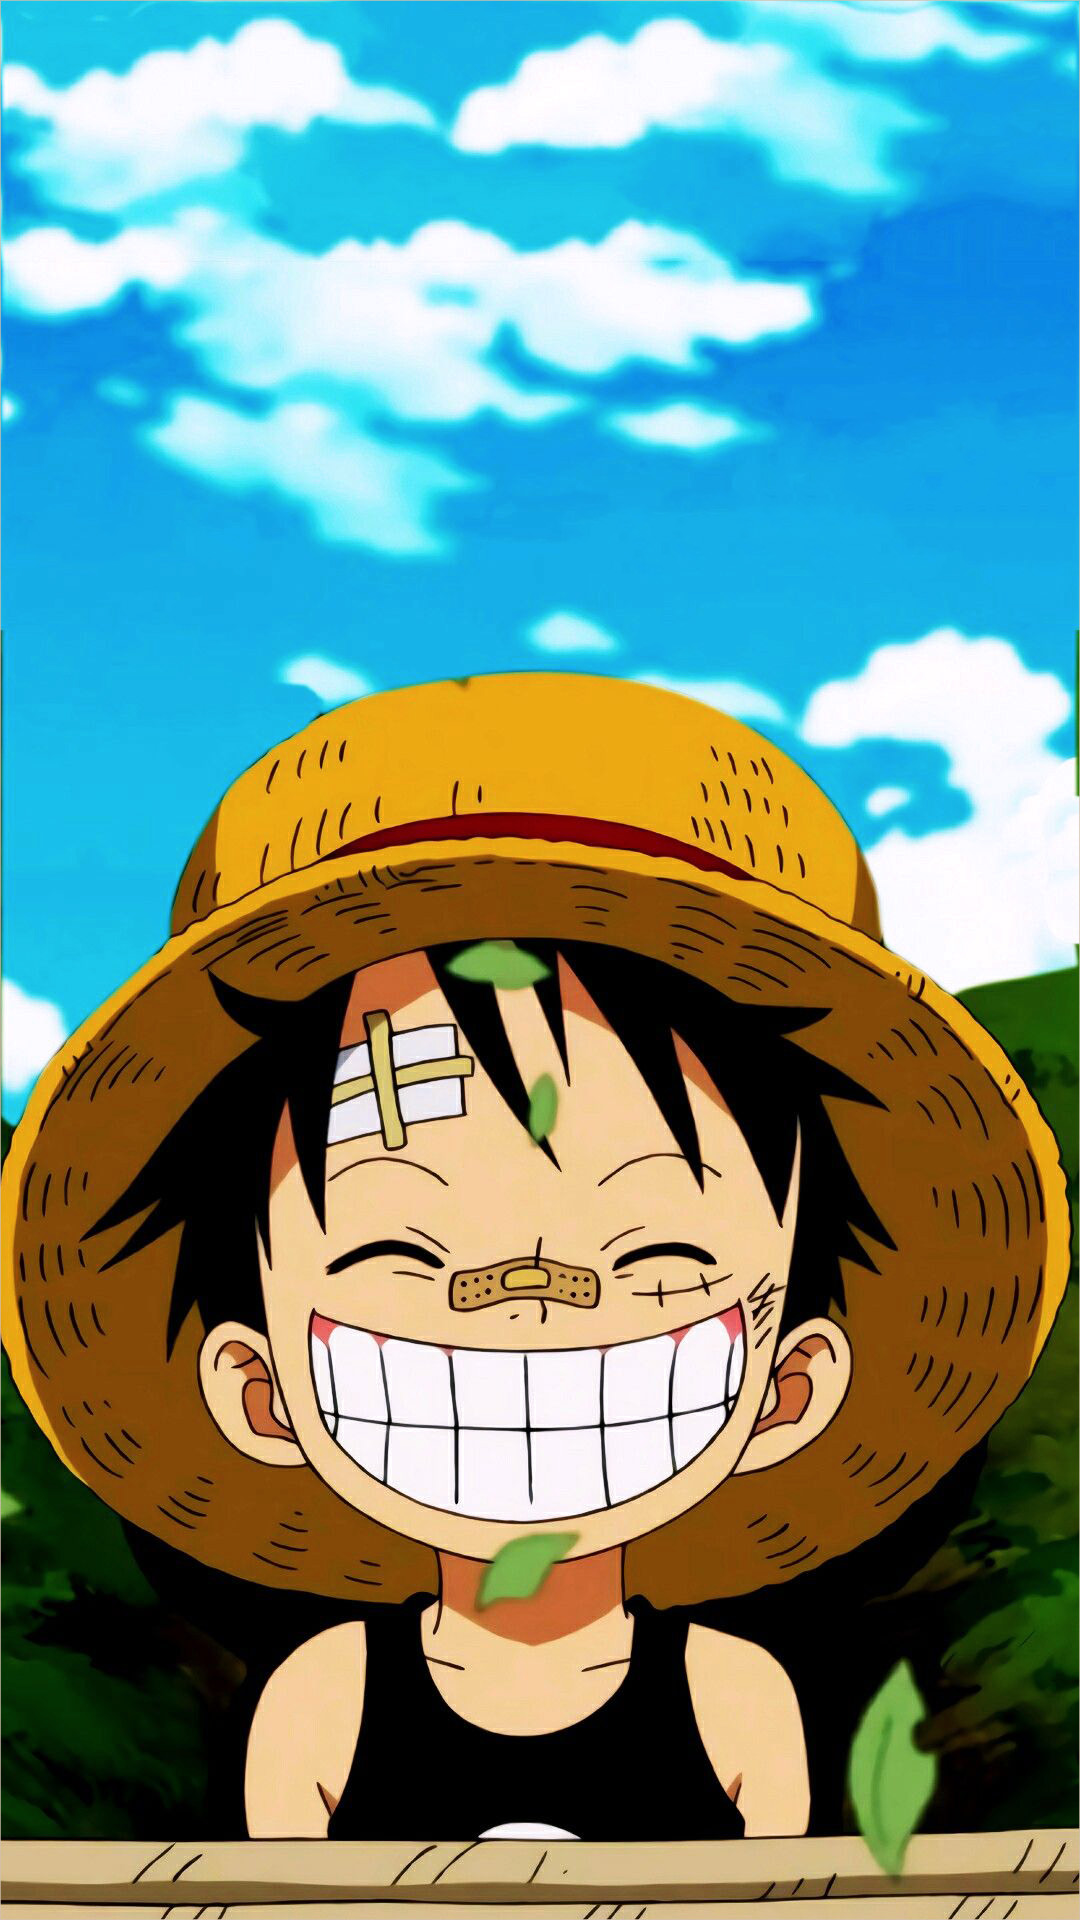 Luffy - người hùng của câu chuyện One Piece, là một nhân vật được yêu thích bởi vô số fan hâm mộ. Khám phá ngay những hình ảnh đầy uyển chuyển của Luffy trong cuộc hành trình tìm kiếm kho báu vĩ đại nhất trên thế giới ngay tại đây!